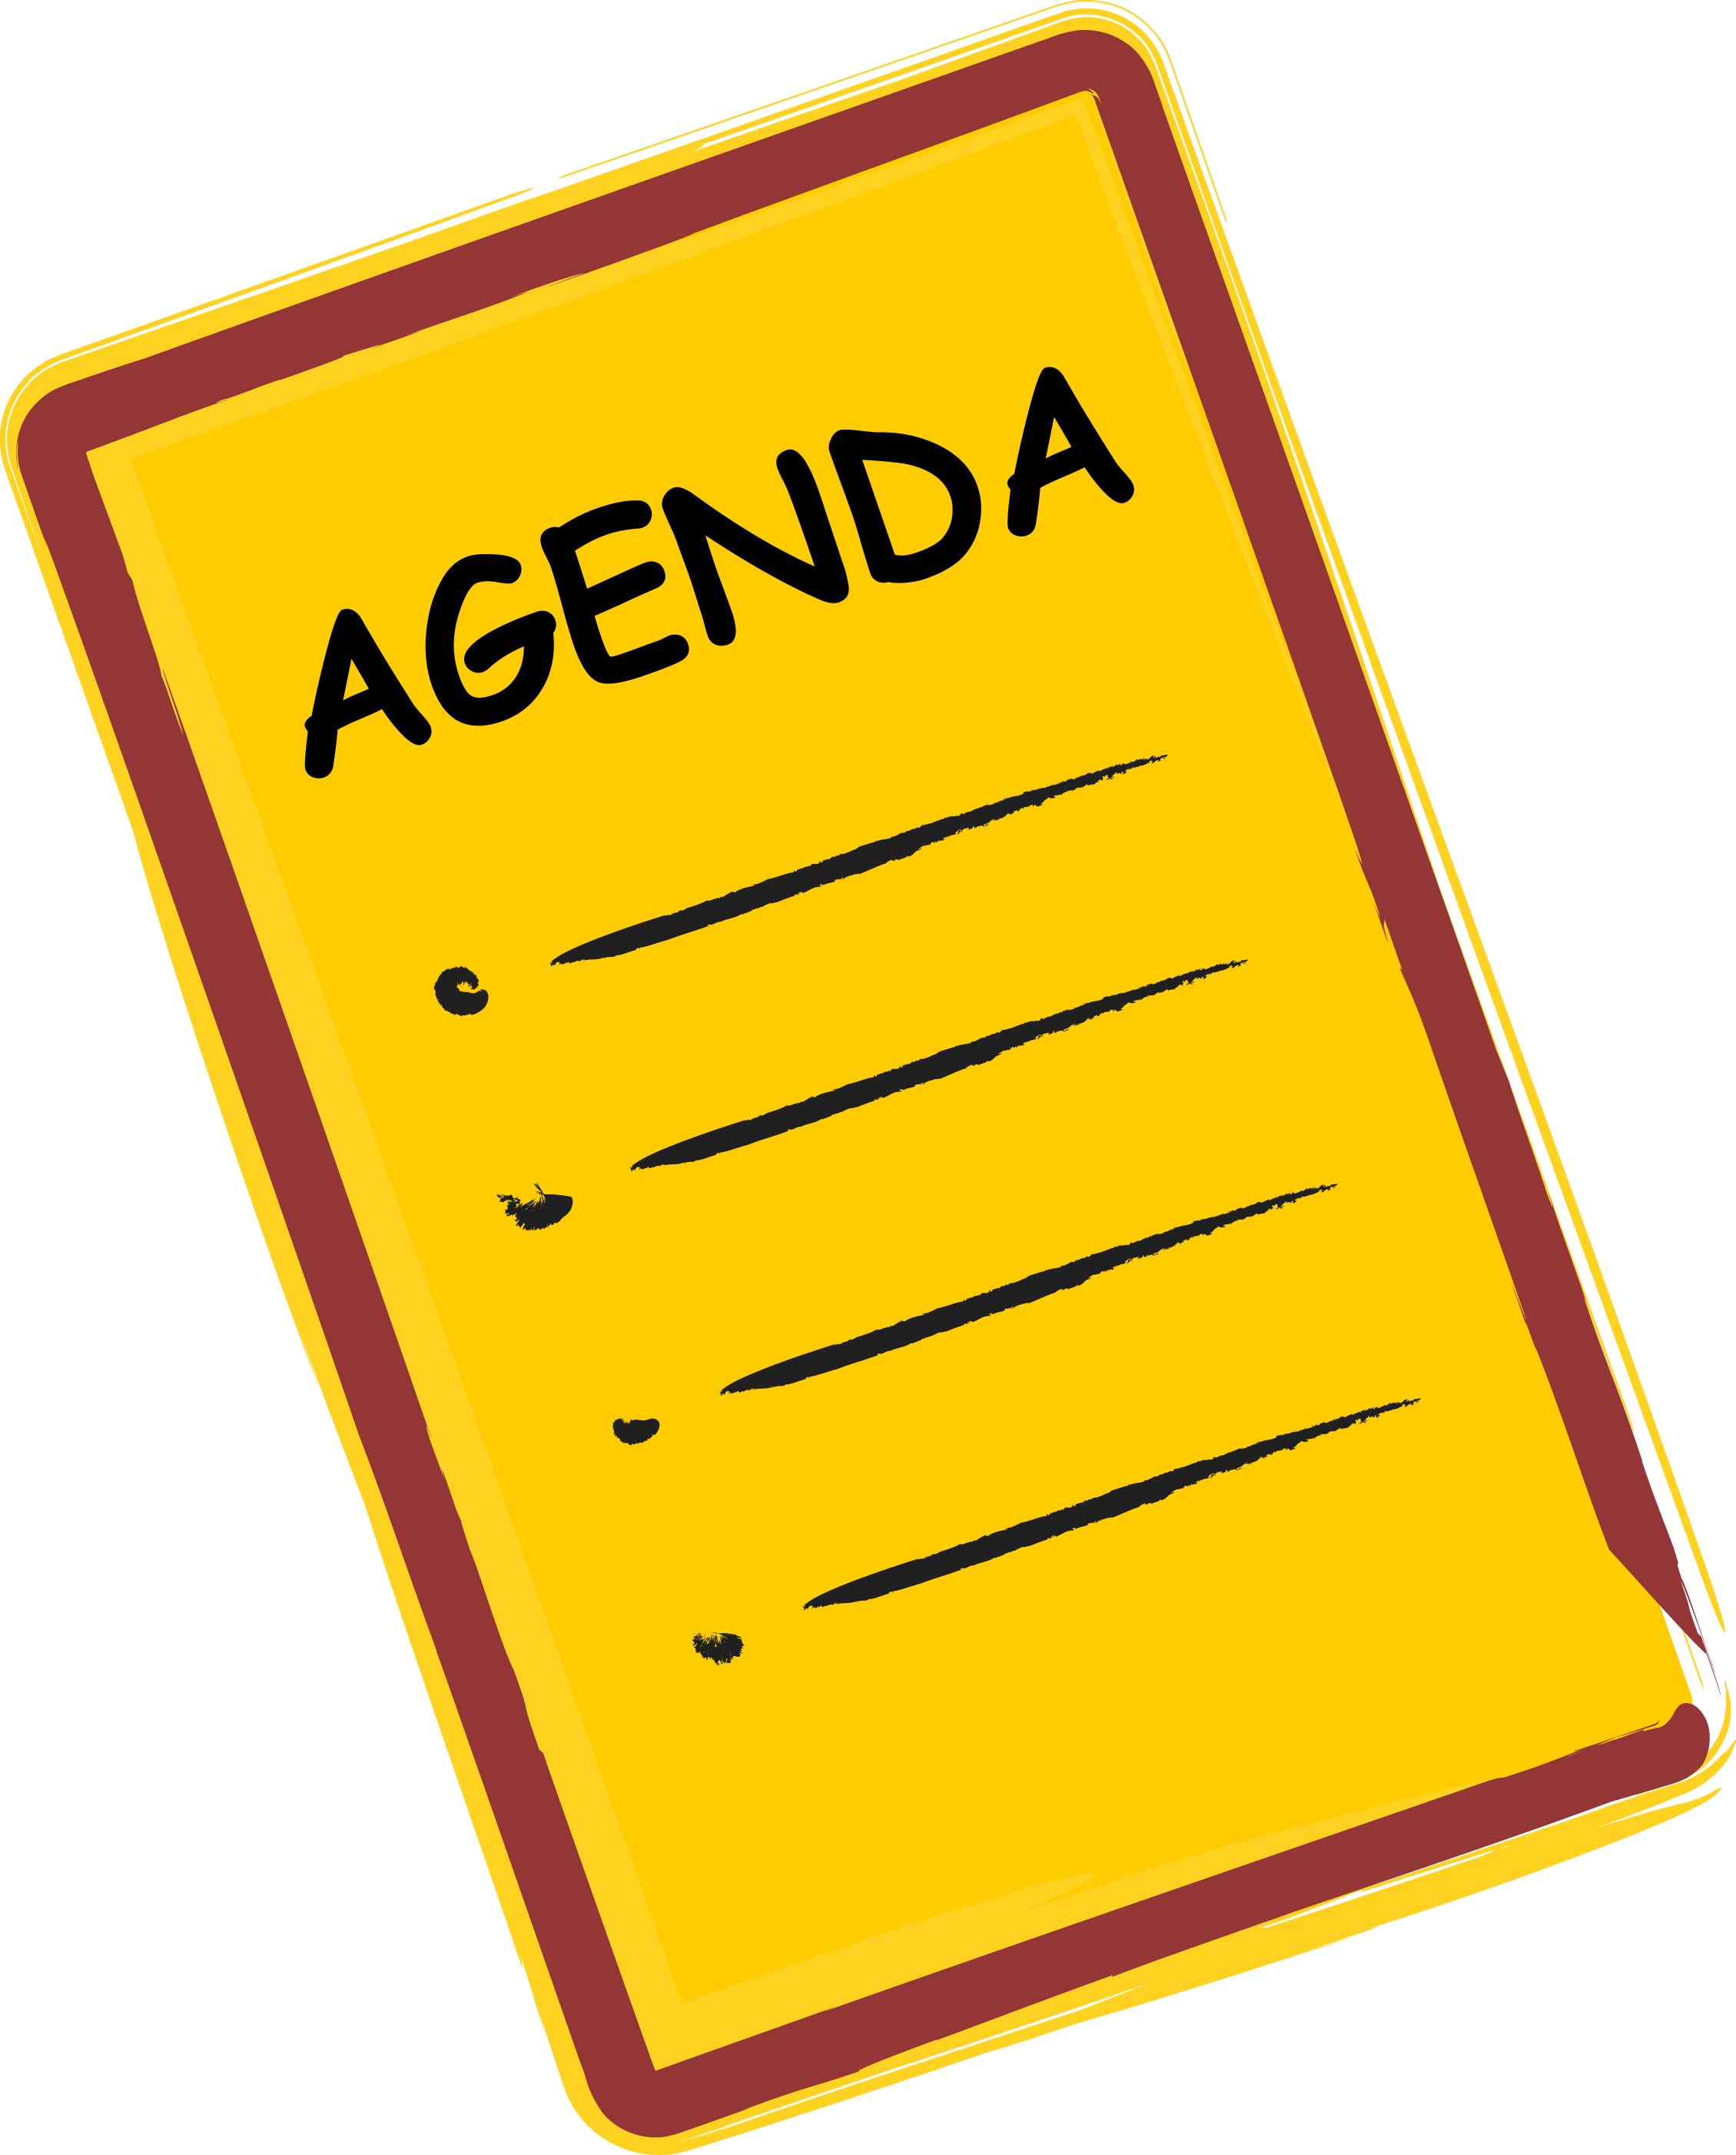 Agenda images